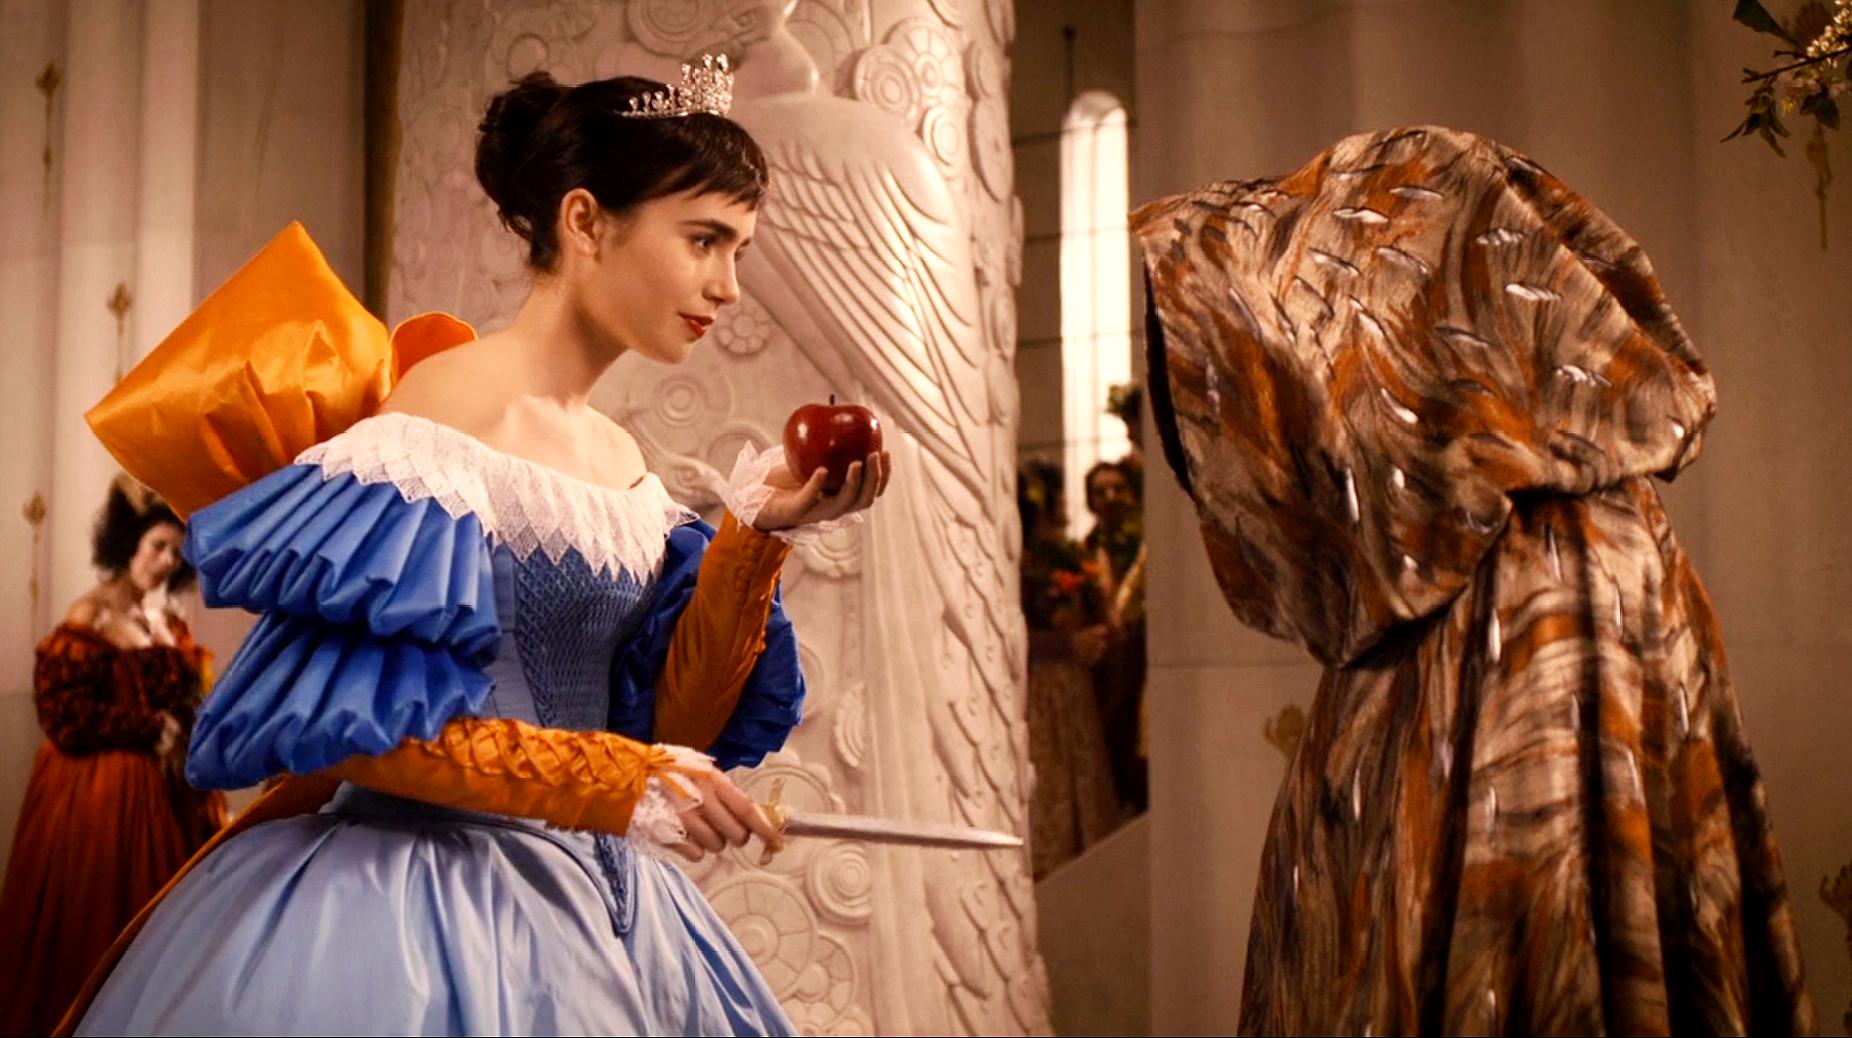 白雪公主收到毒苹果,她不仅没吃反而将苹果切开,送给了继母